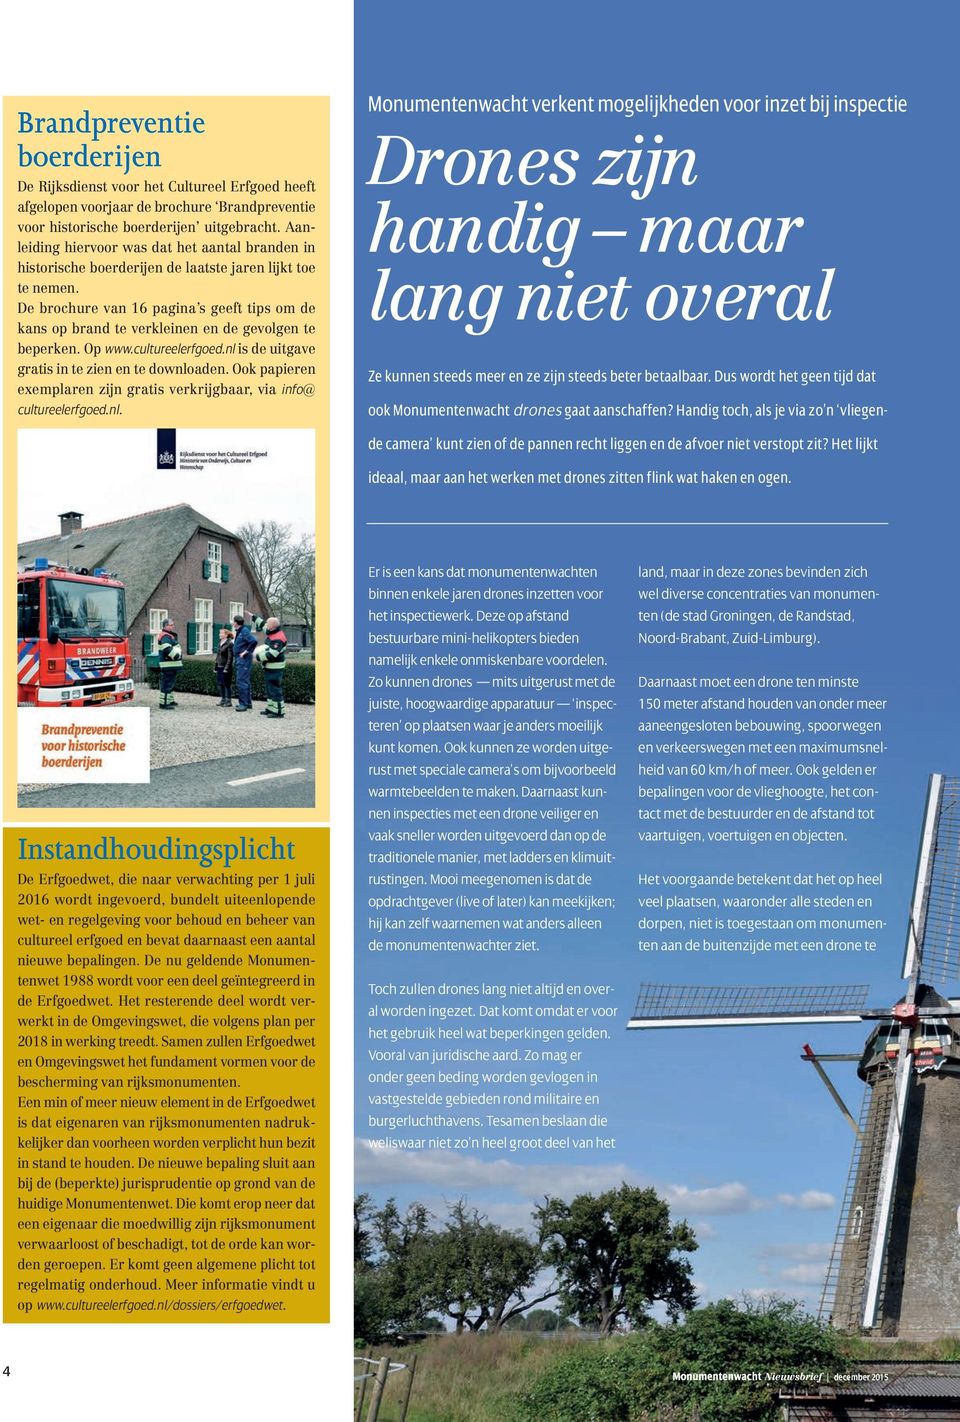 De brochure van 16 pagina s geeft tips om de kans op brand te verkleinen en de gevolgen te beperken. Op www.cultureelerfgoed.nl is de uitgave gratis in te zien en te downloaden.